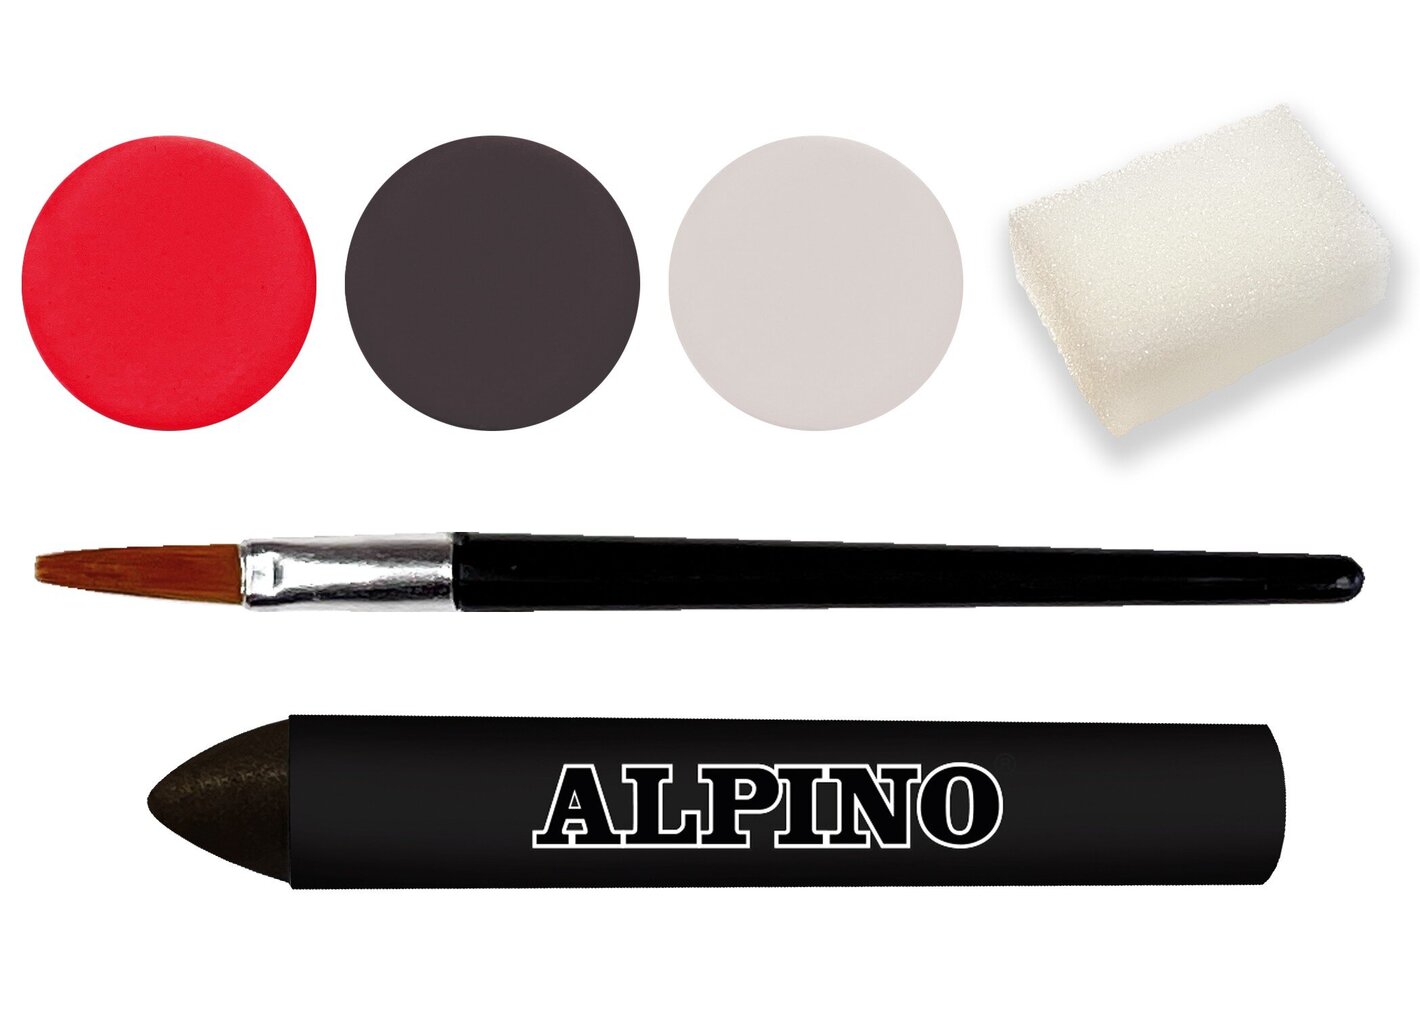 Makiažo rinkinys Alpino Vampire Aqua make-up 3sp kaina ir informacija | Kosmetika vaikams ir mamoms | pigu.lt